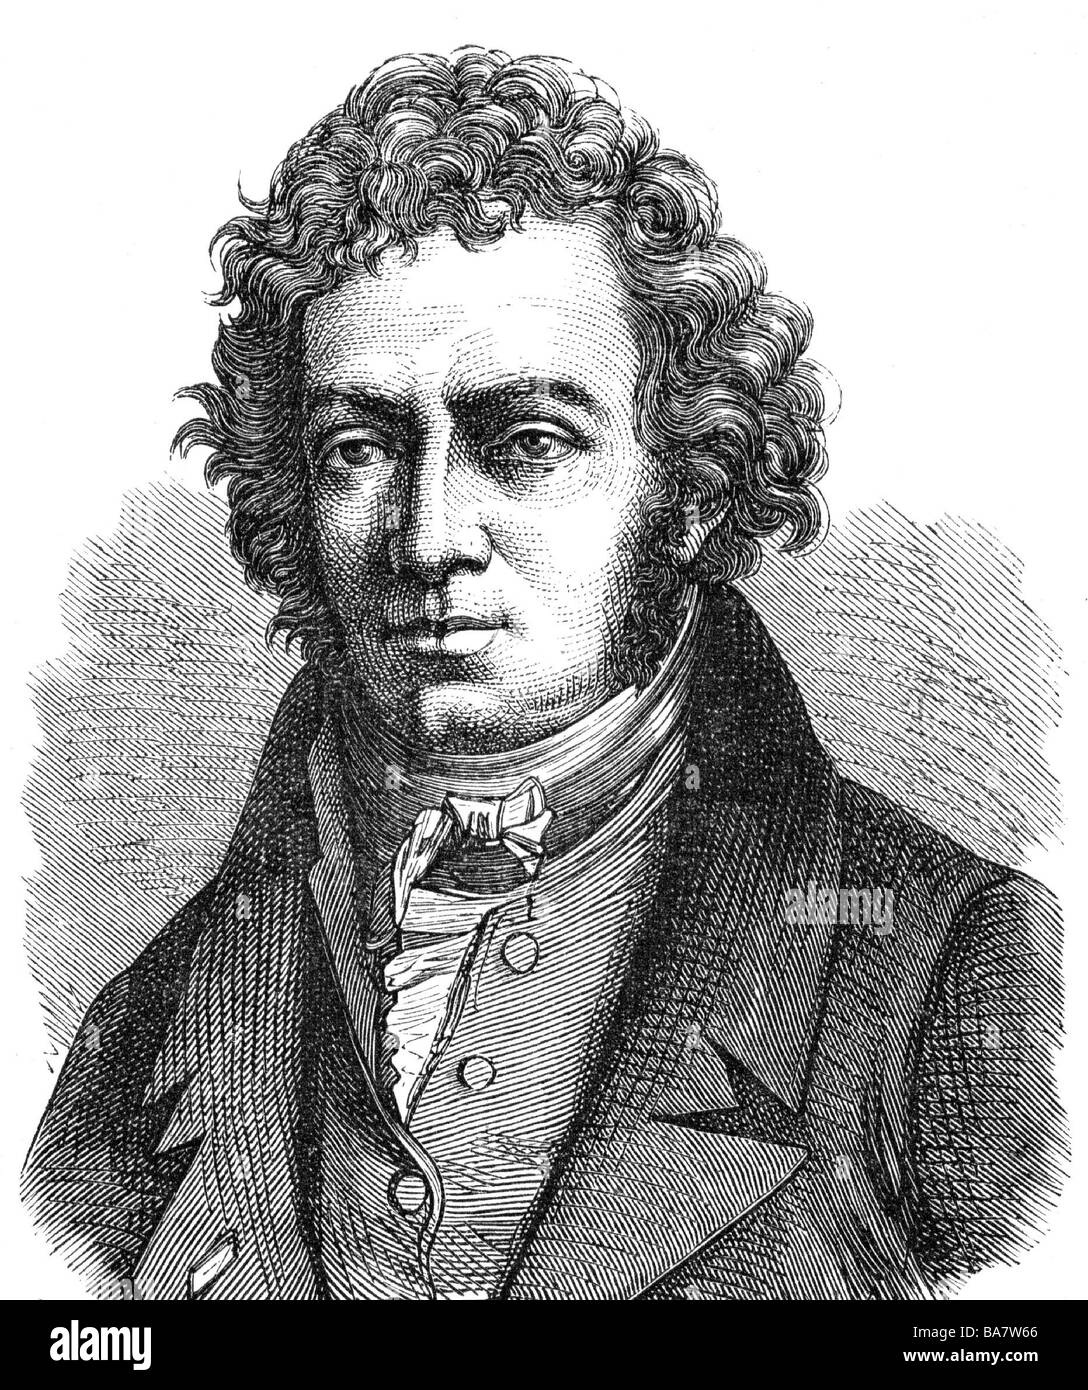 Ampère, Andre, 22.1.1775 - 10.6.1836, scientifique français (physicien et mathématicien), portrait, gravure sur bois, XIXe siècle, Banque D'Images